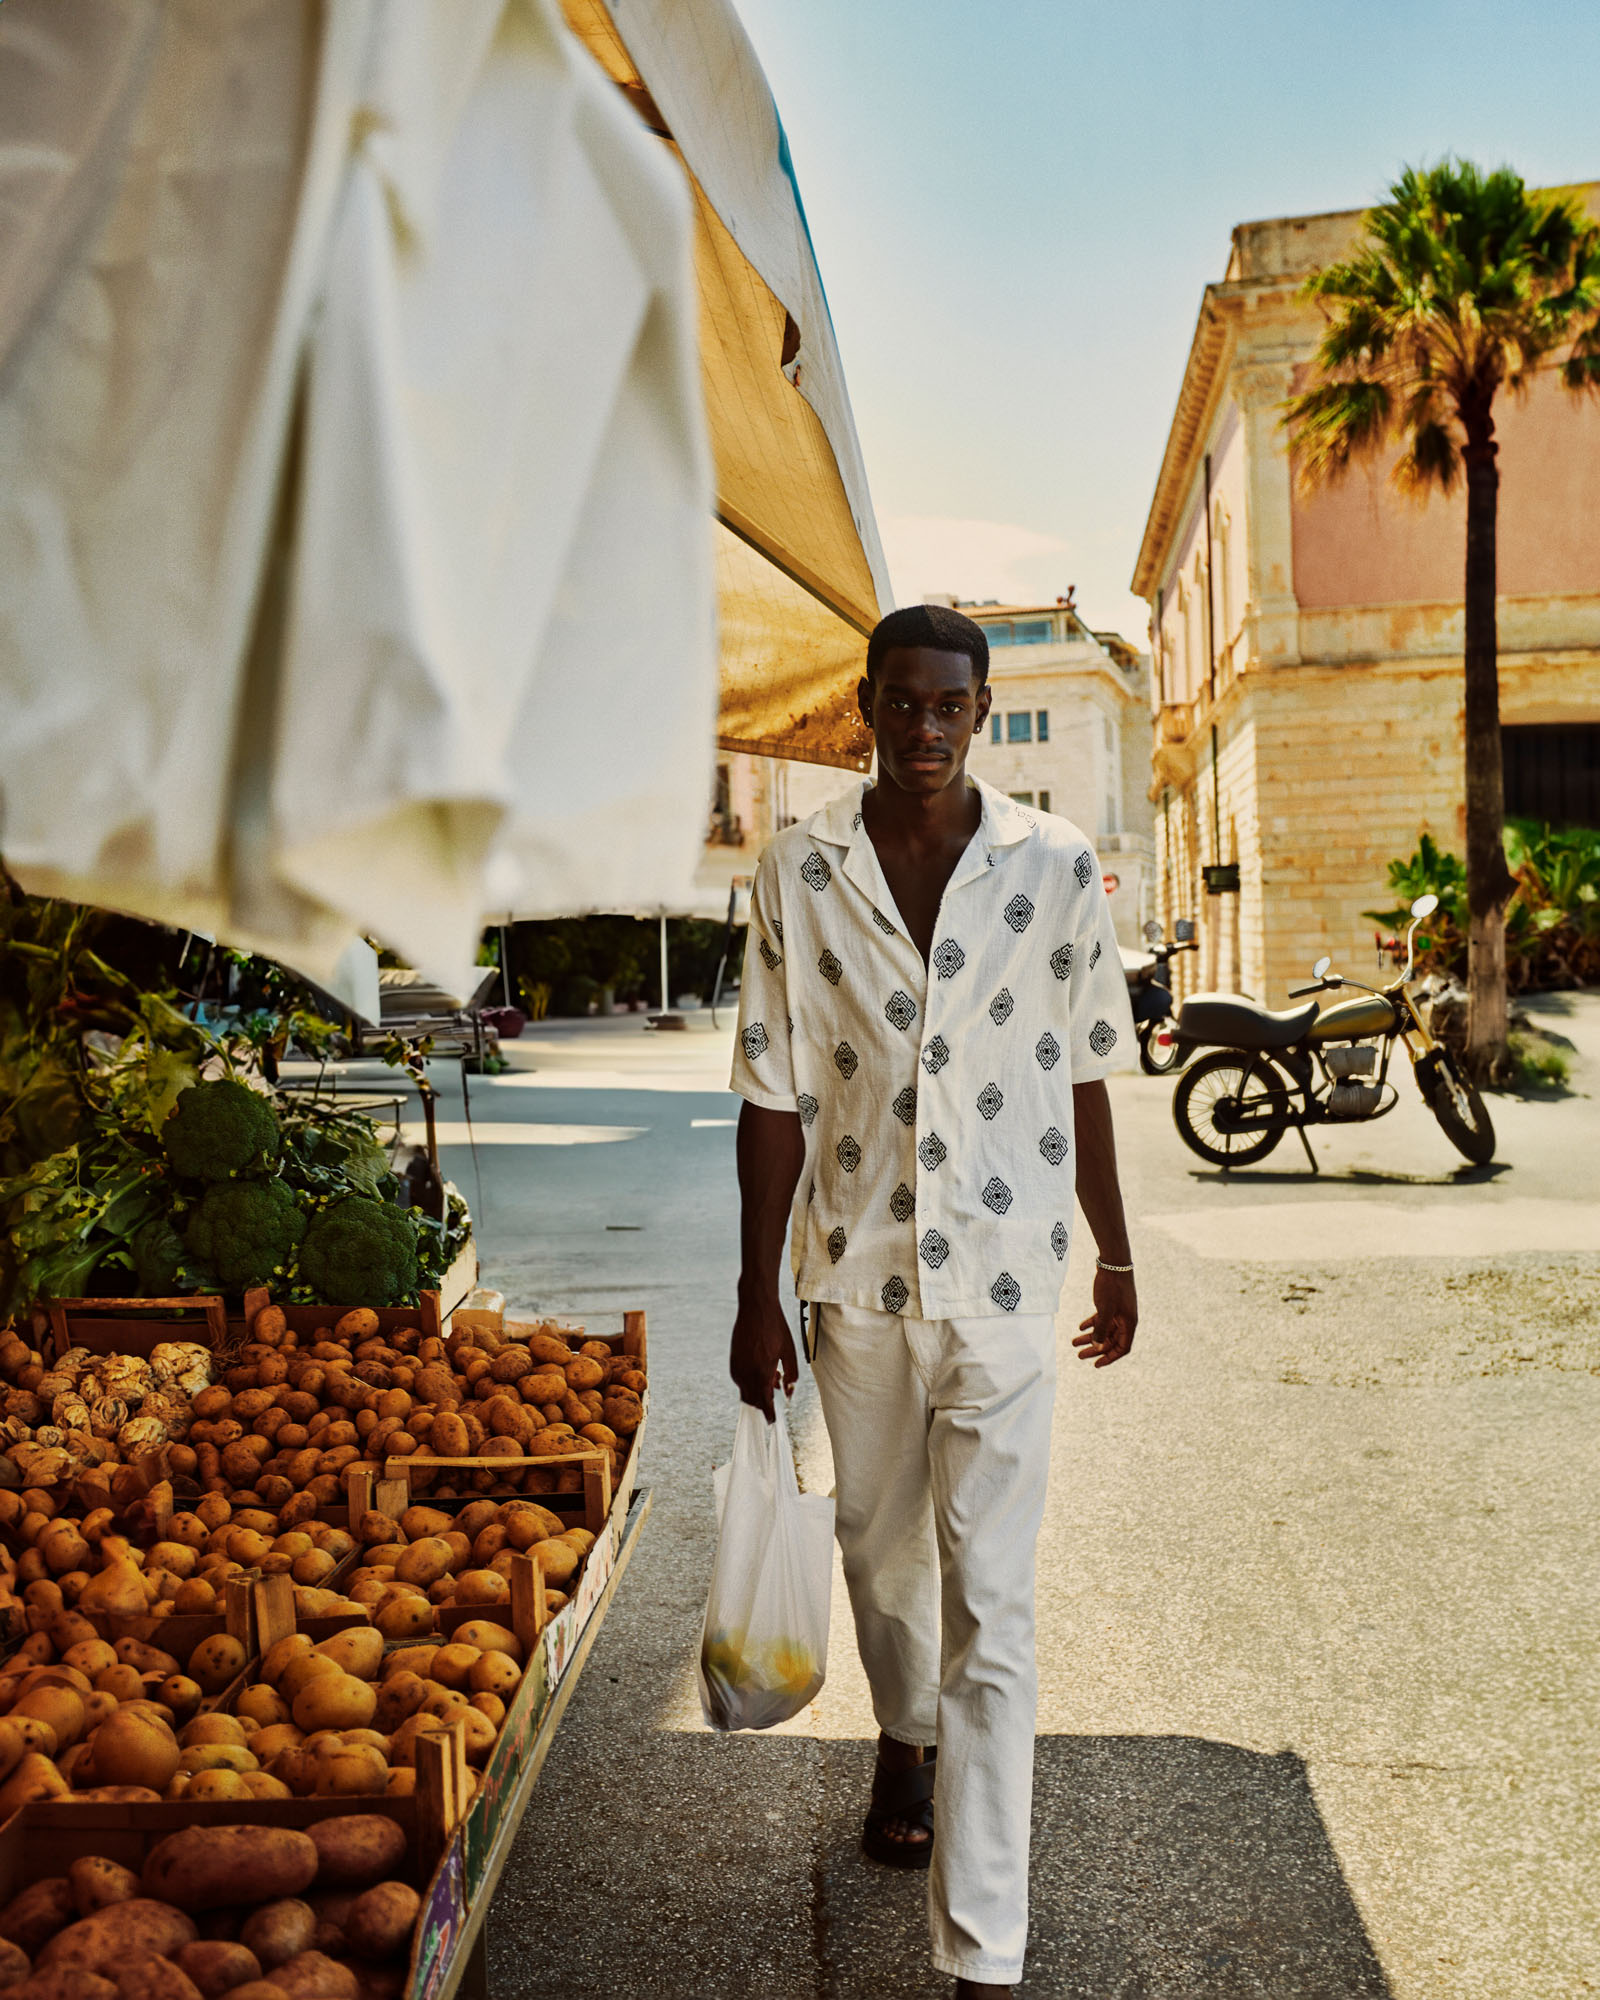 Dariane Sanche photographe capture la collection de vêtement Zara Homme dans le marché public de Syracuse en Italie.